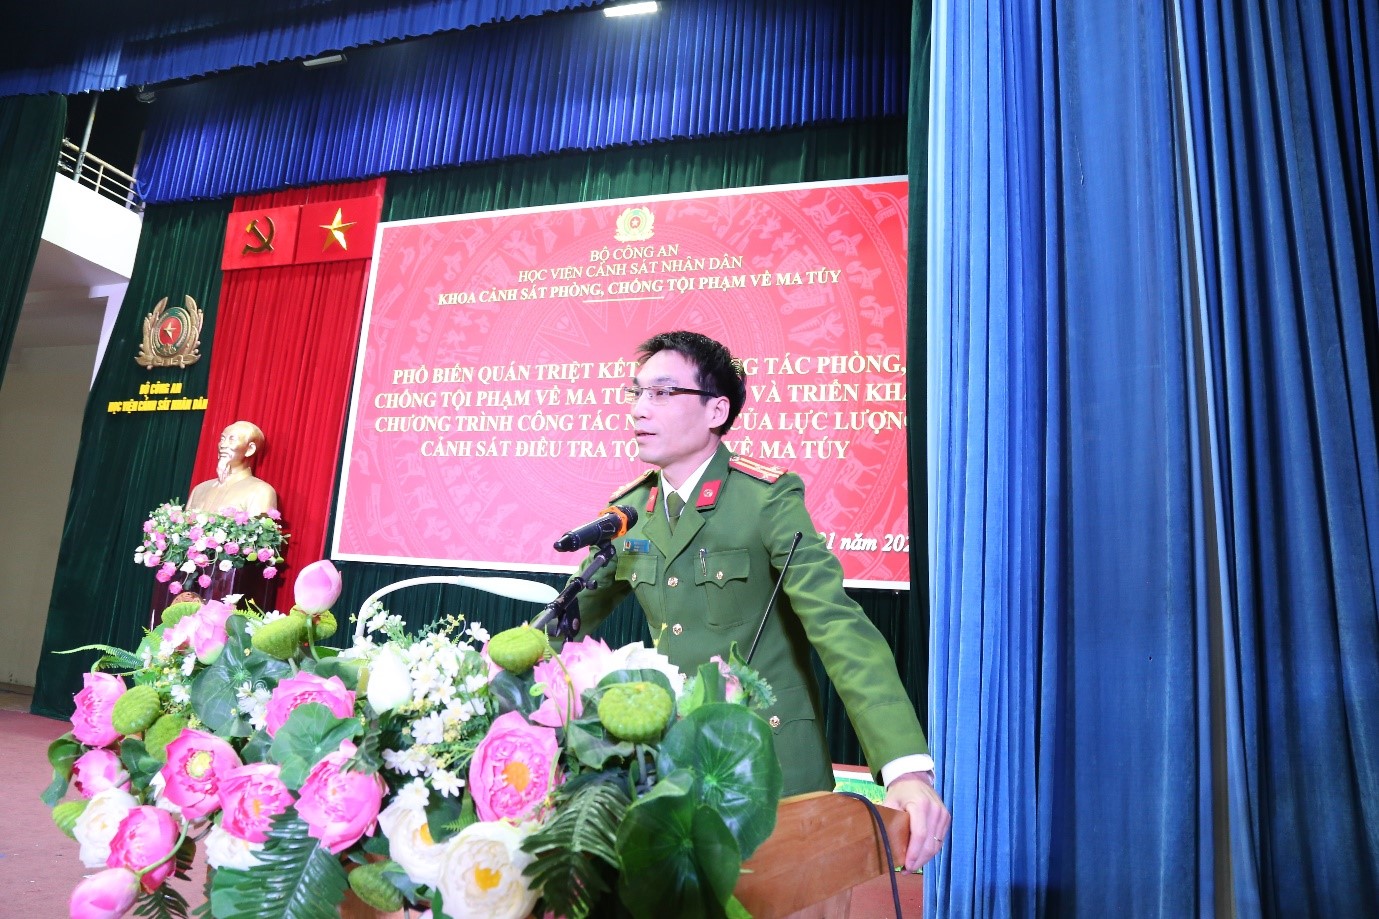 Thượng tá, PGS. TS Ngô Gia Bắc, Trưởng khoa Cảnh sát PCTP về ma túy phát biểu tại buổi báo cáo chuyên đề